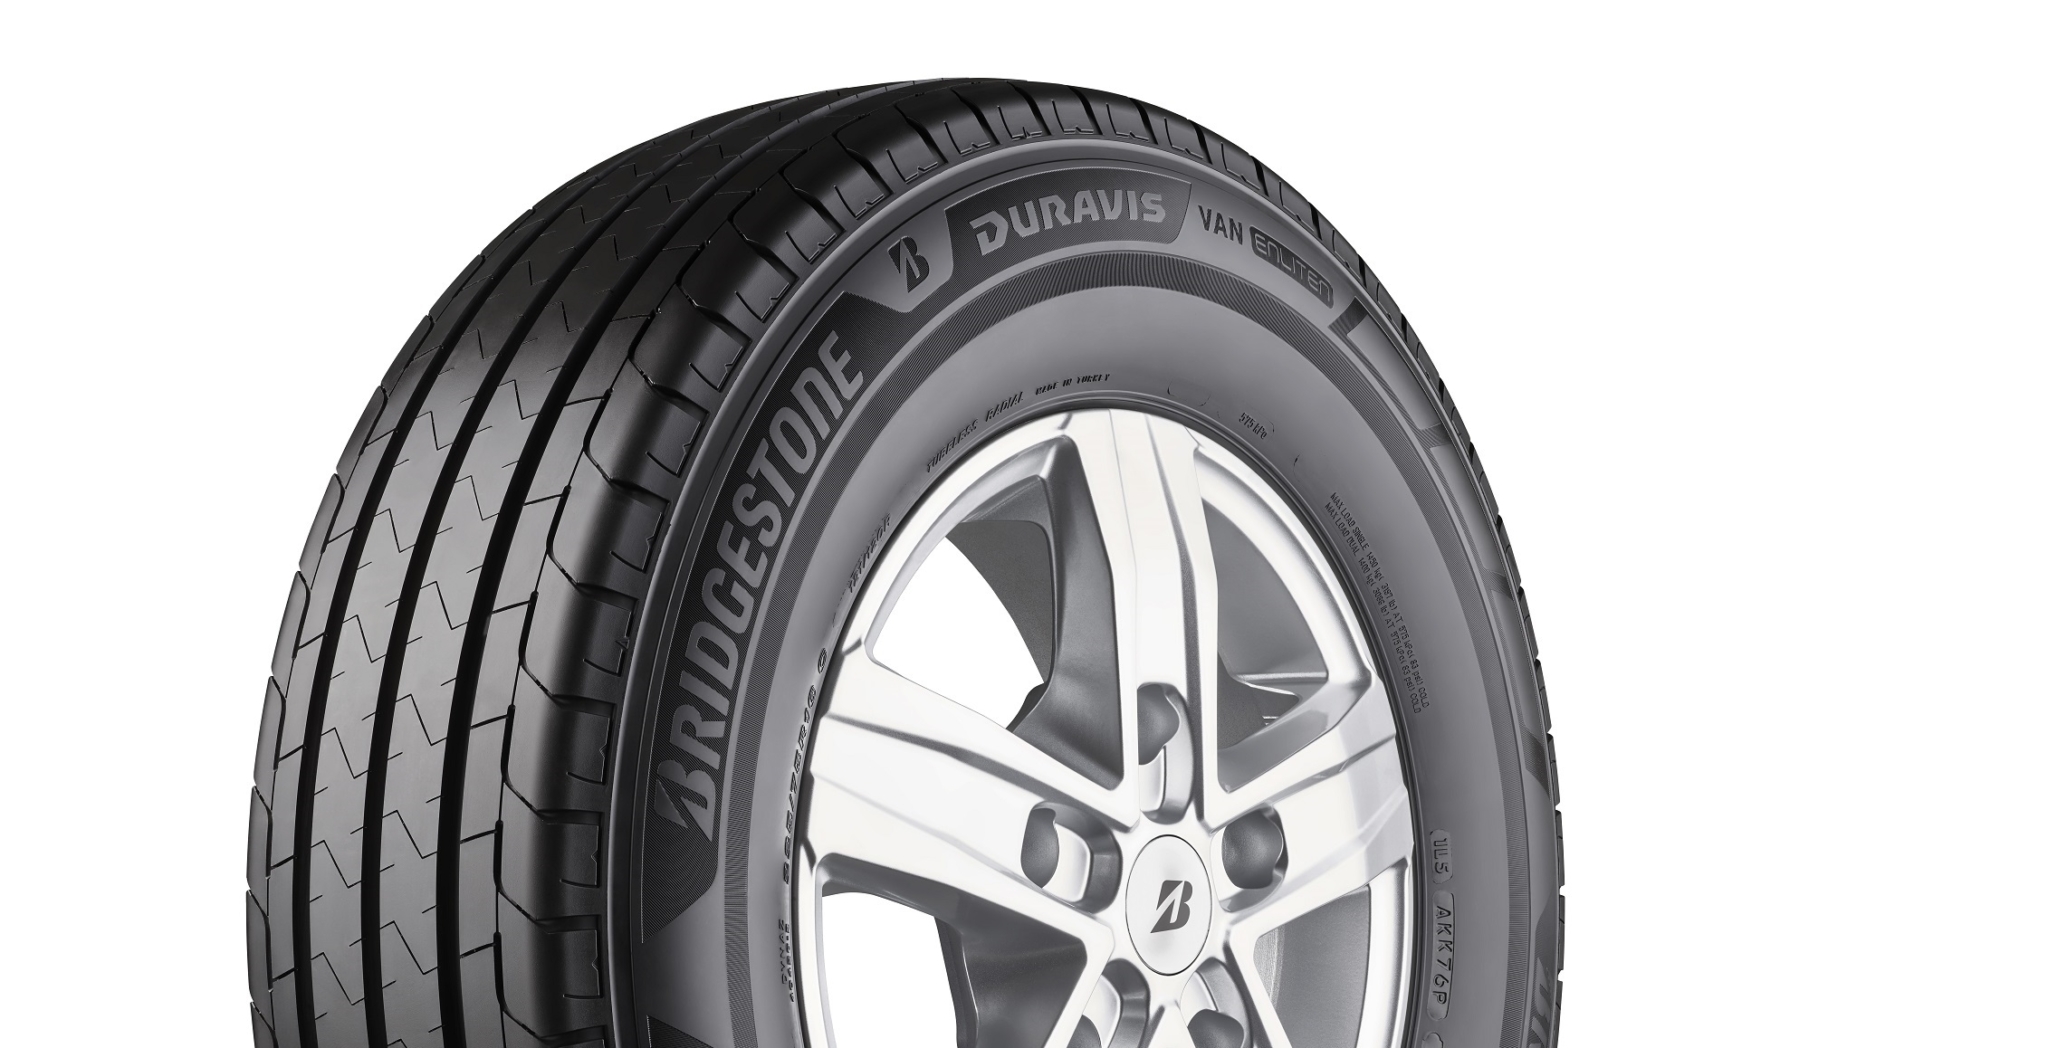 Bridgestone van tyre sales ‘buoyant’ as upgraded Duravis Van driving impressive performance